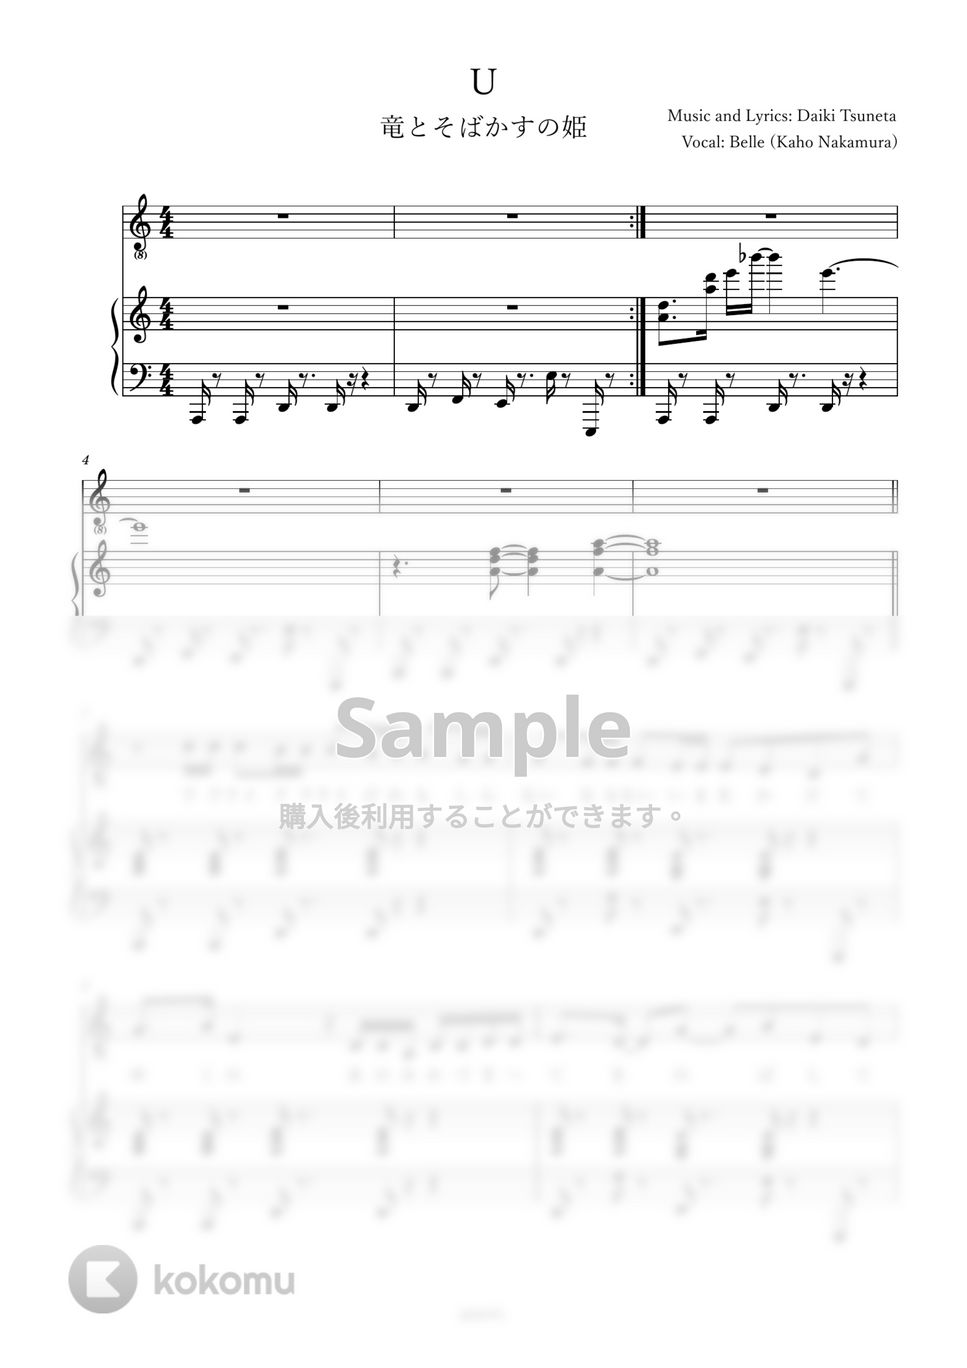 Belle - U (ピアノ伴奏) by poyori.